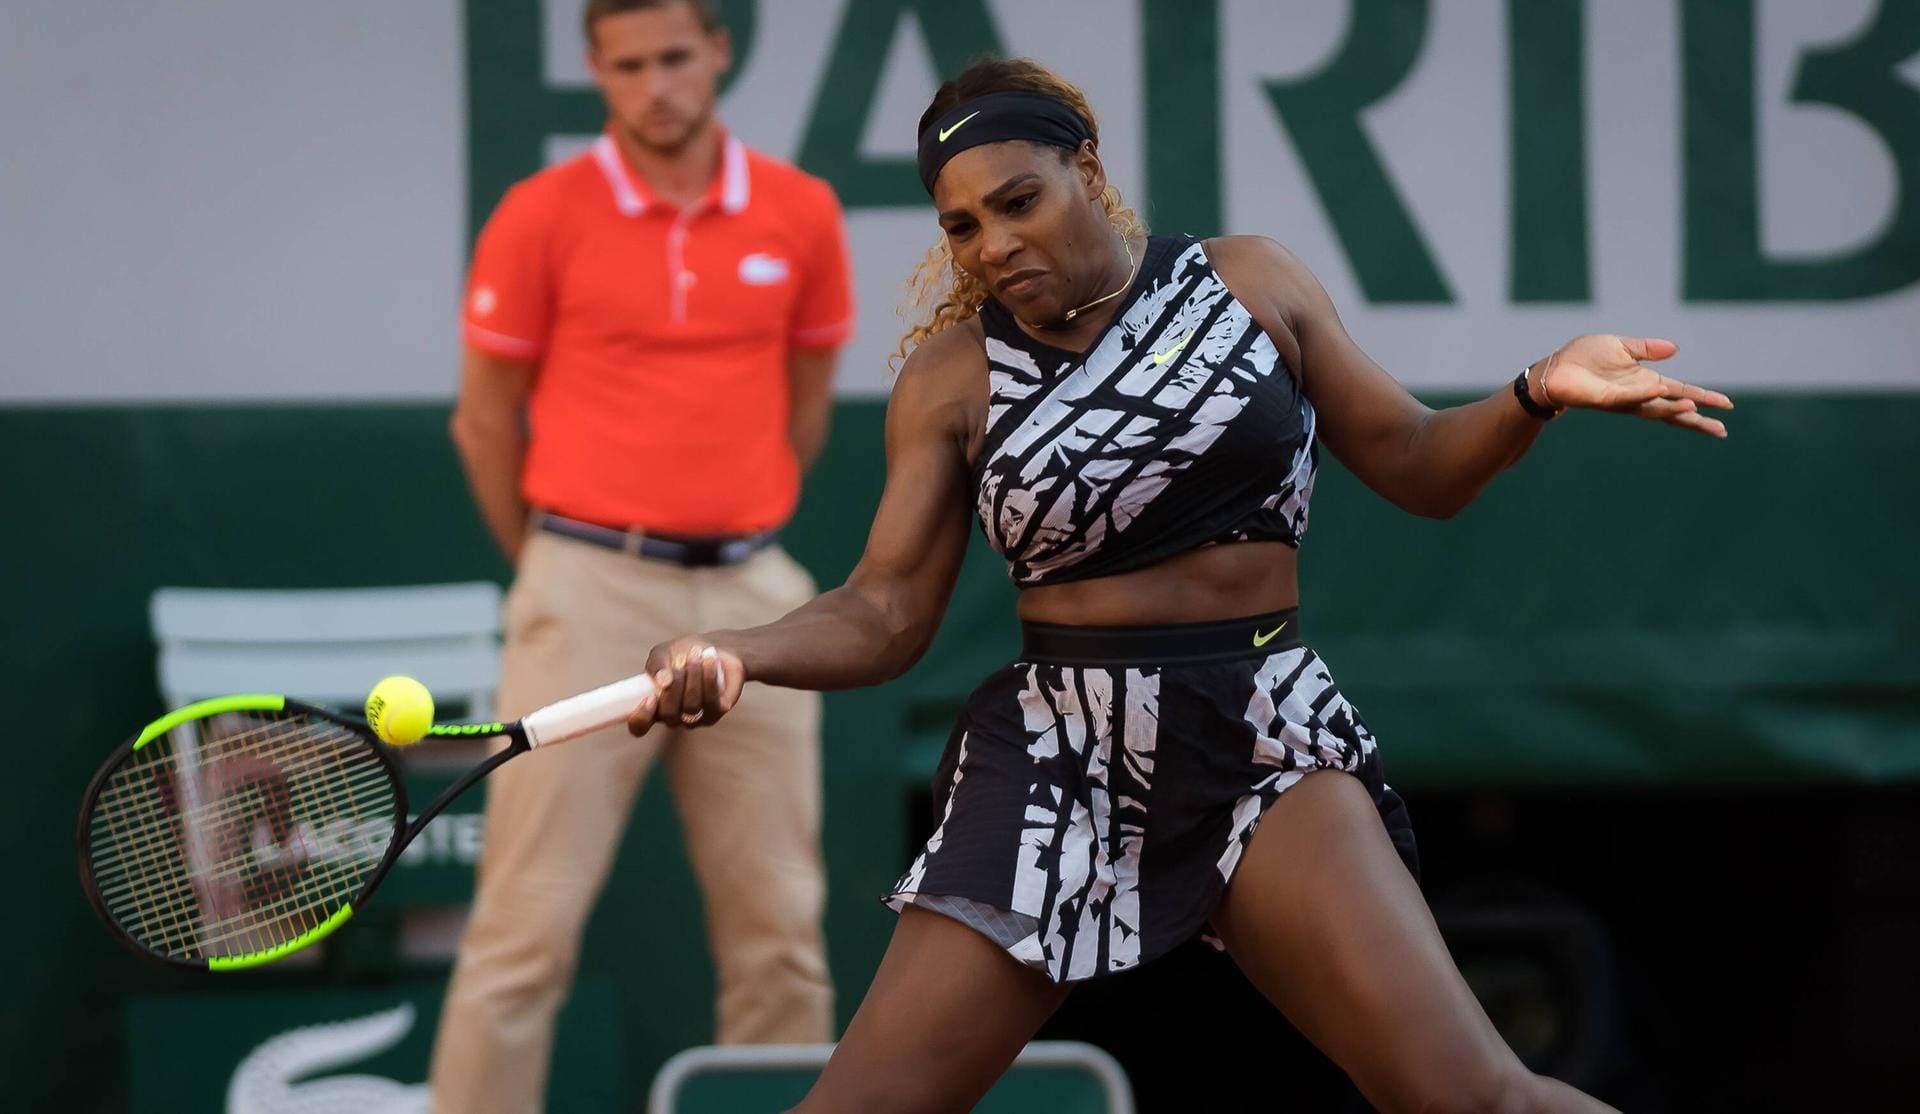 Einzige Frau im Ranking: Serena Williams (Tennis/USA) – 29,2 Mio. US-Dollar reichen zu Platz 63.